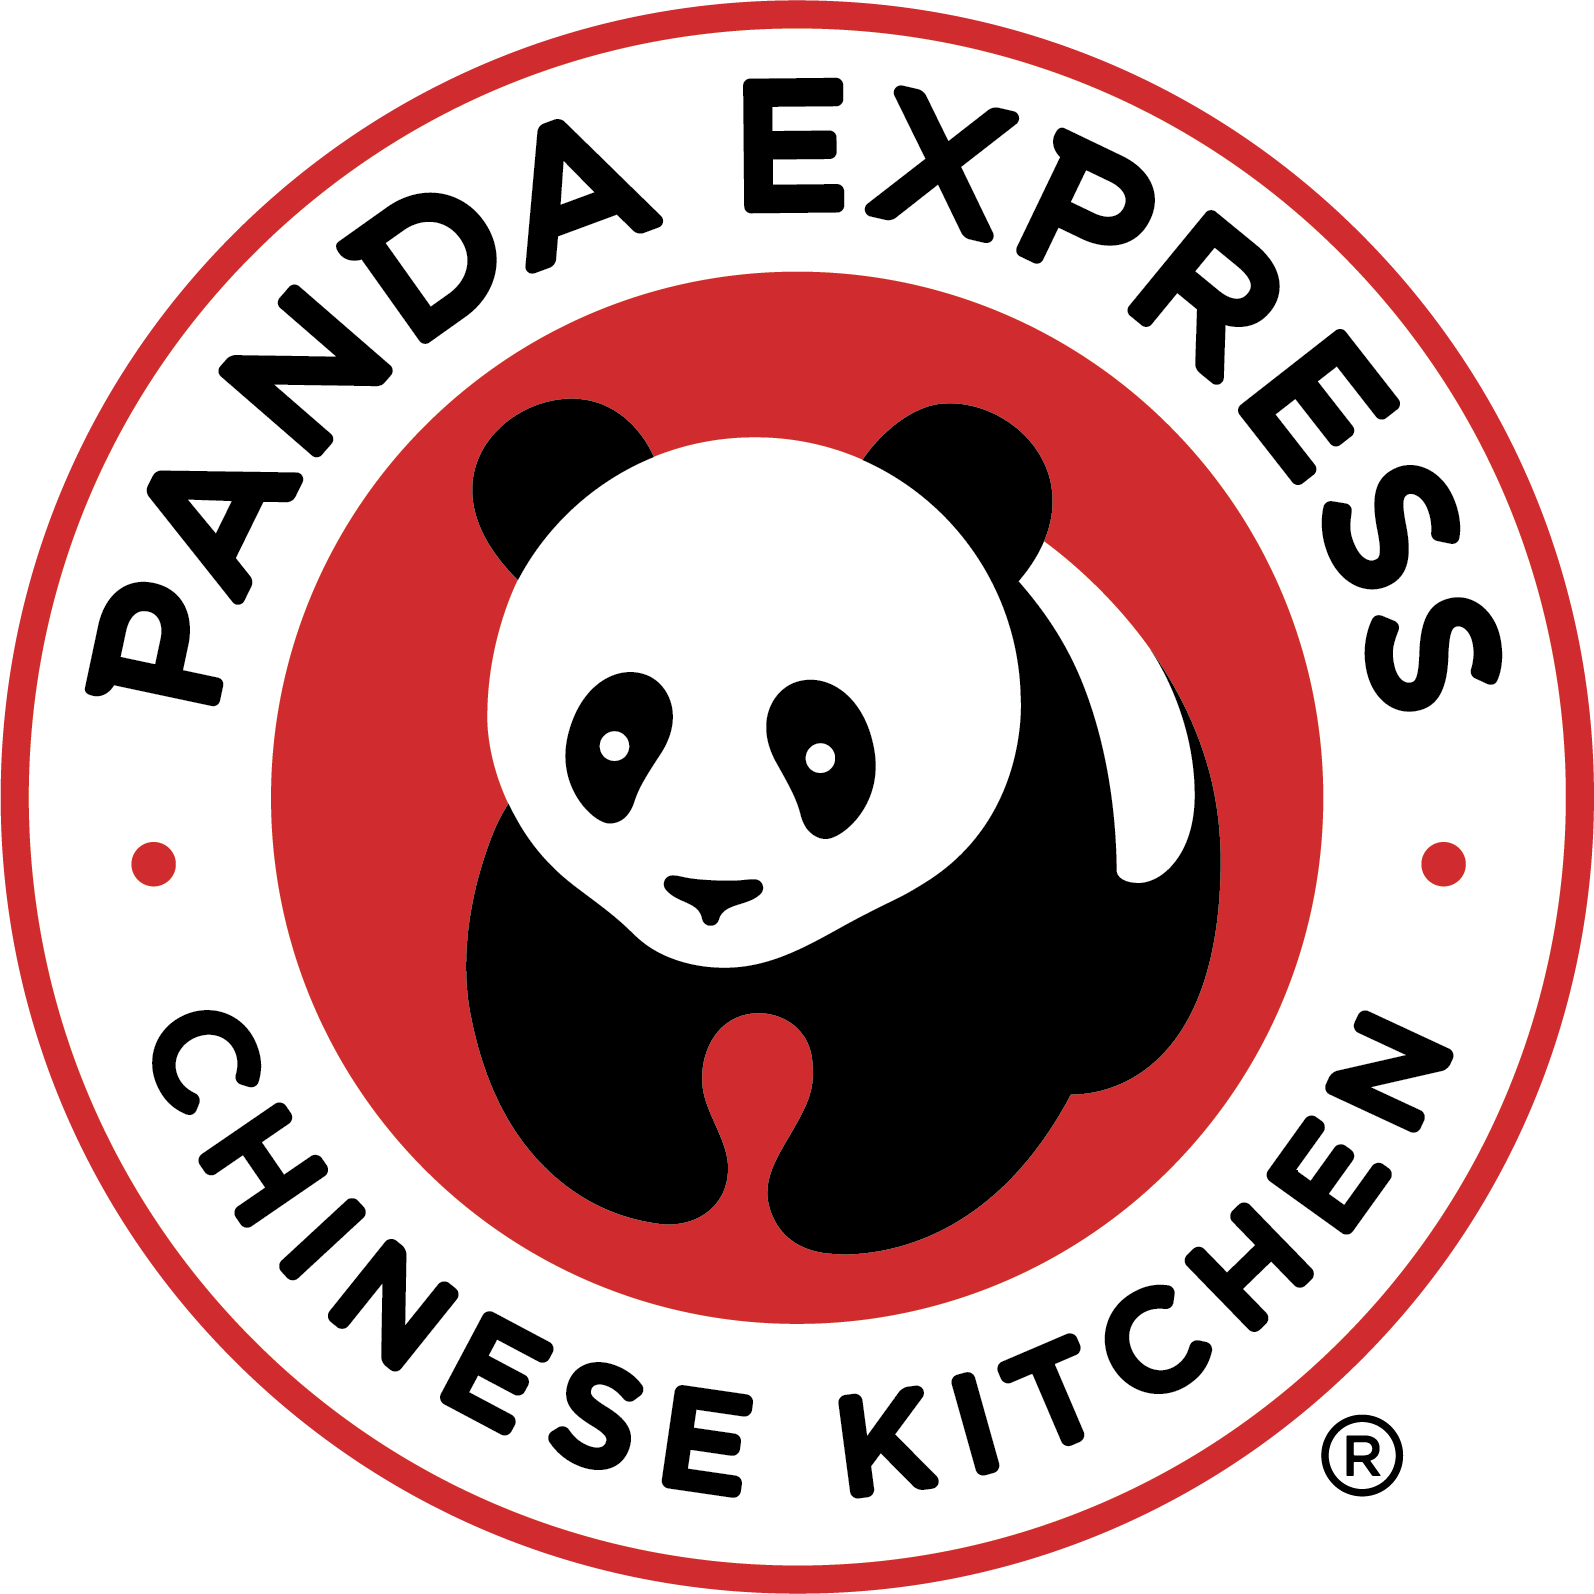 Panda Express Chinese Kitchen